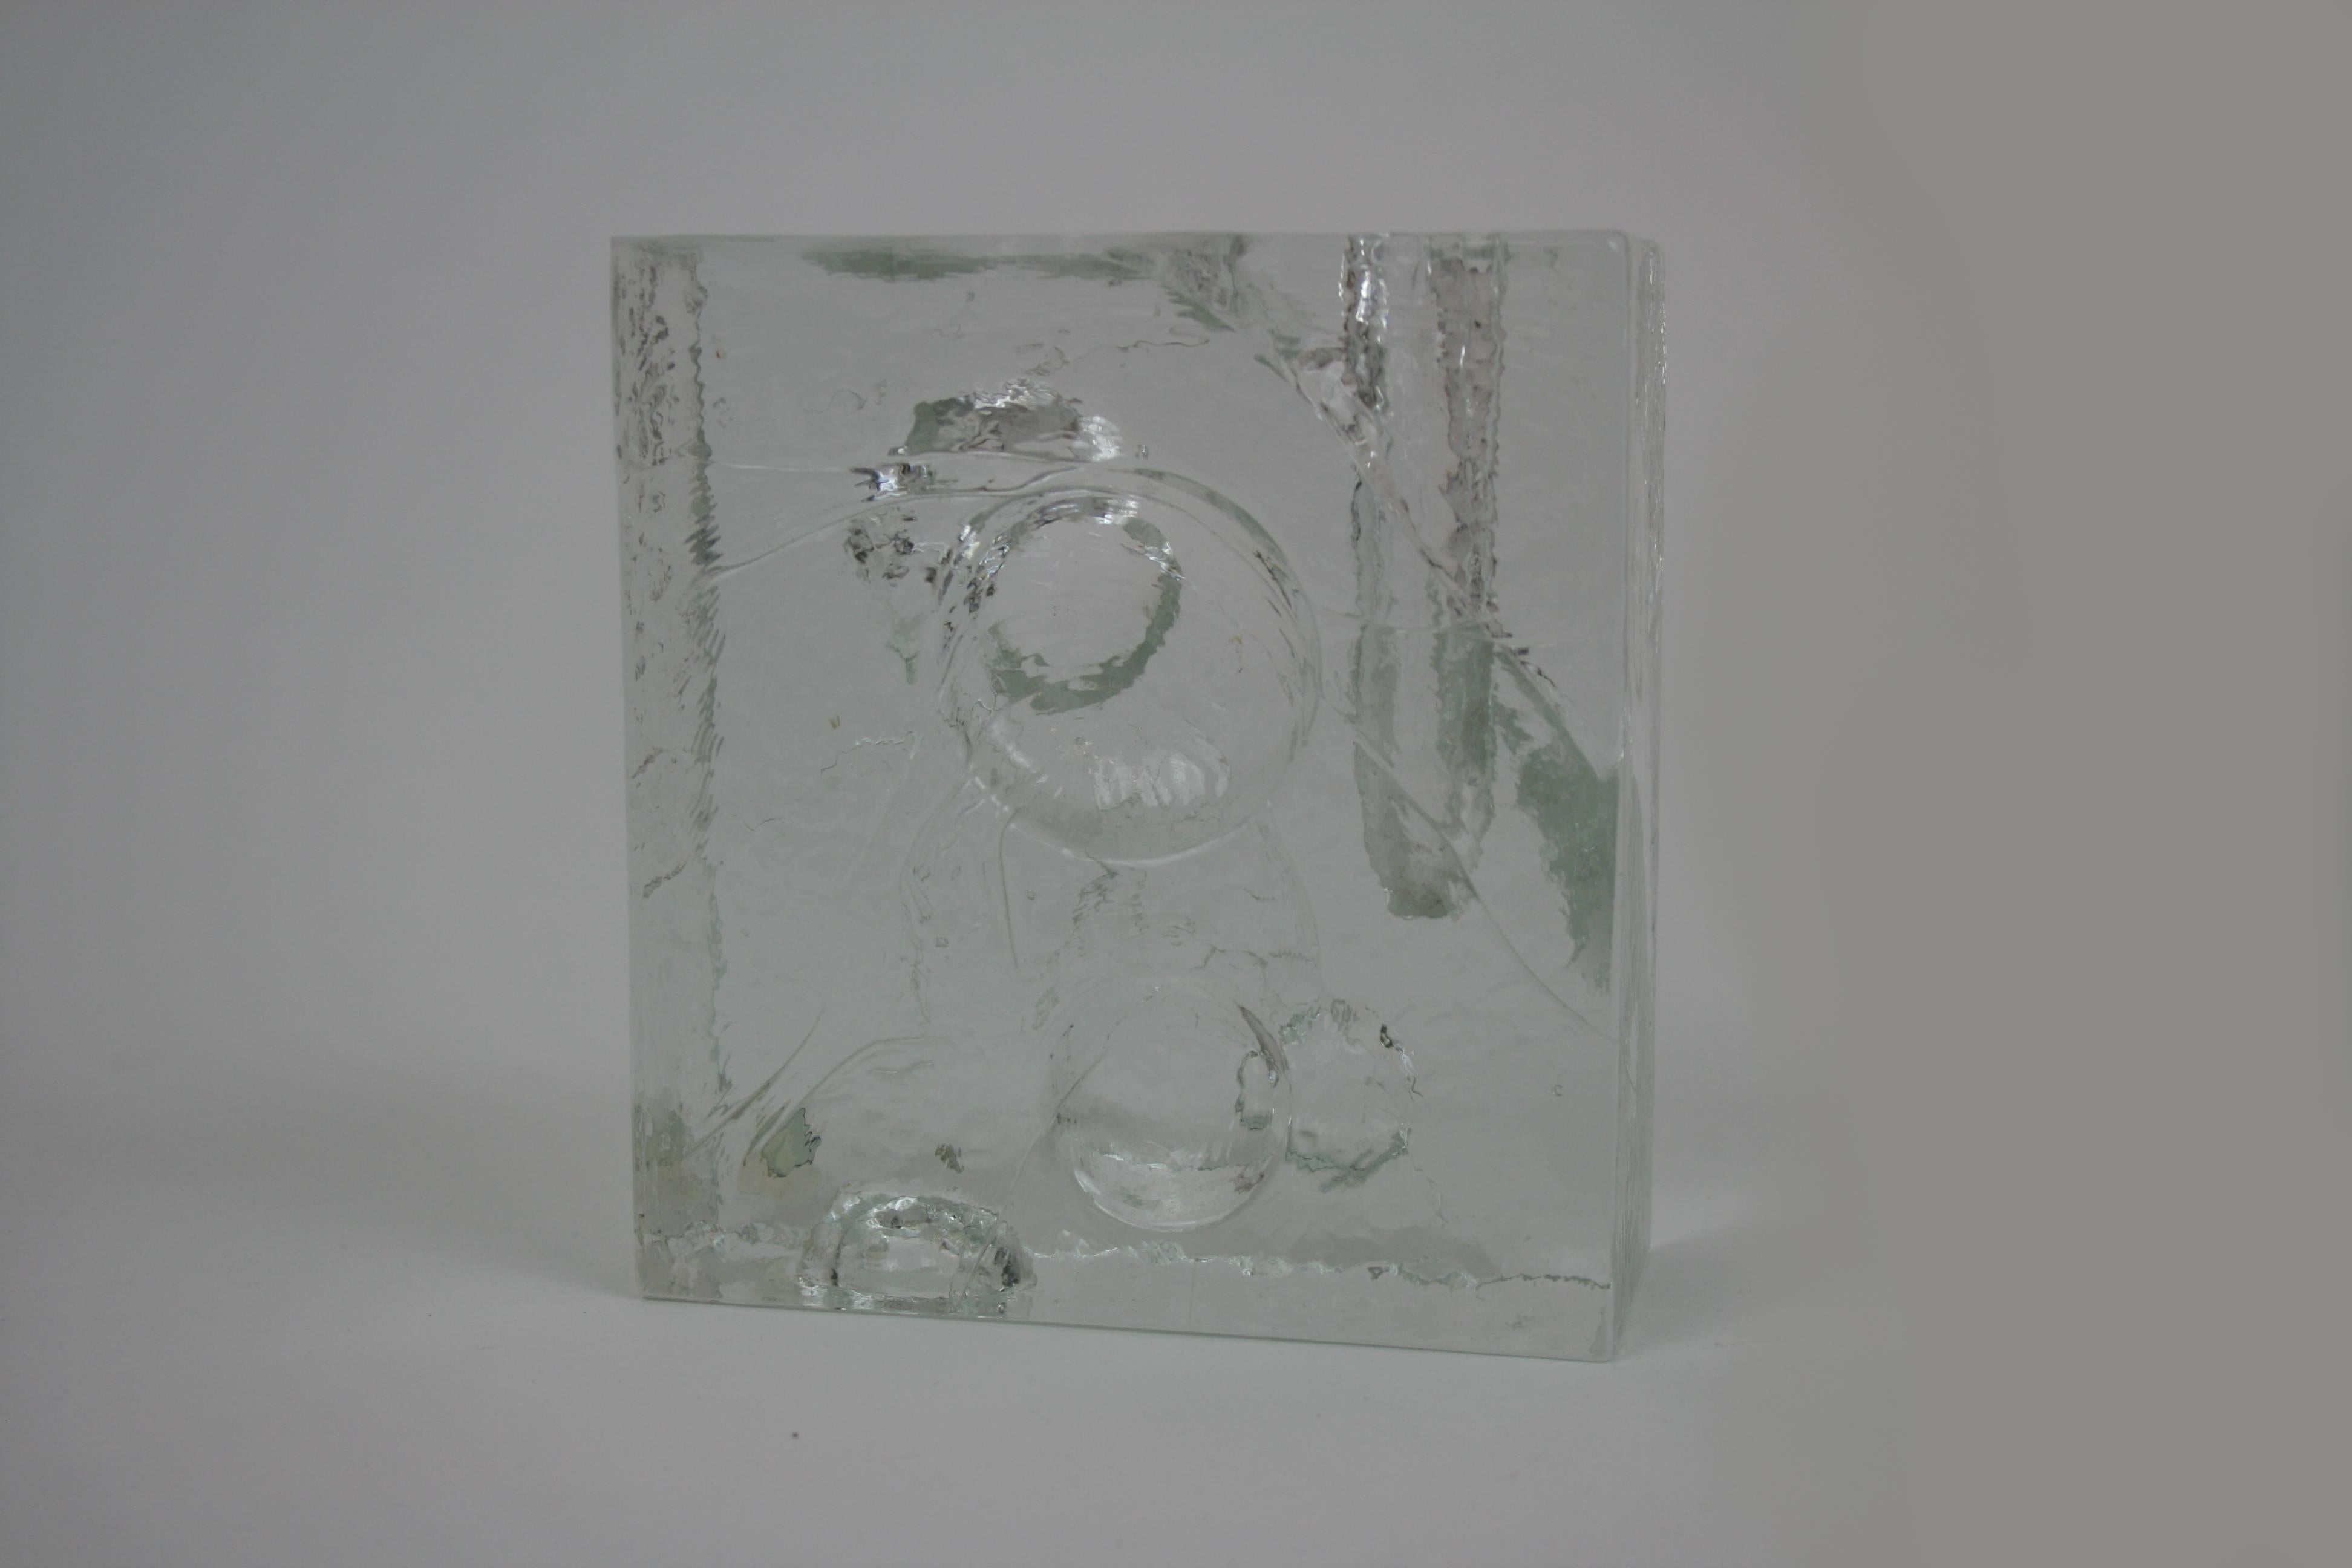 Un vase sculpté en verre glacé du fabricant suédois Pukeberg, conçu par Uno Westerberg. Cet objet gai et lumineux offre un regard authentique et humoristique sur la vivacité de la période du design de la fin des années 1960. Tout en conservant sa